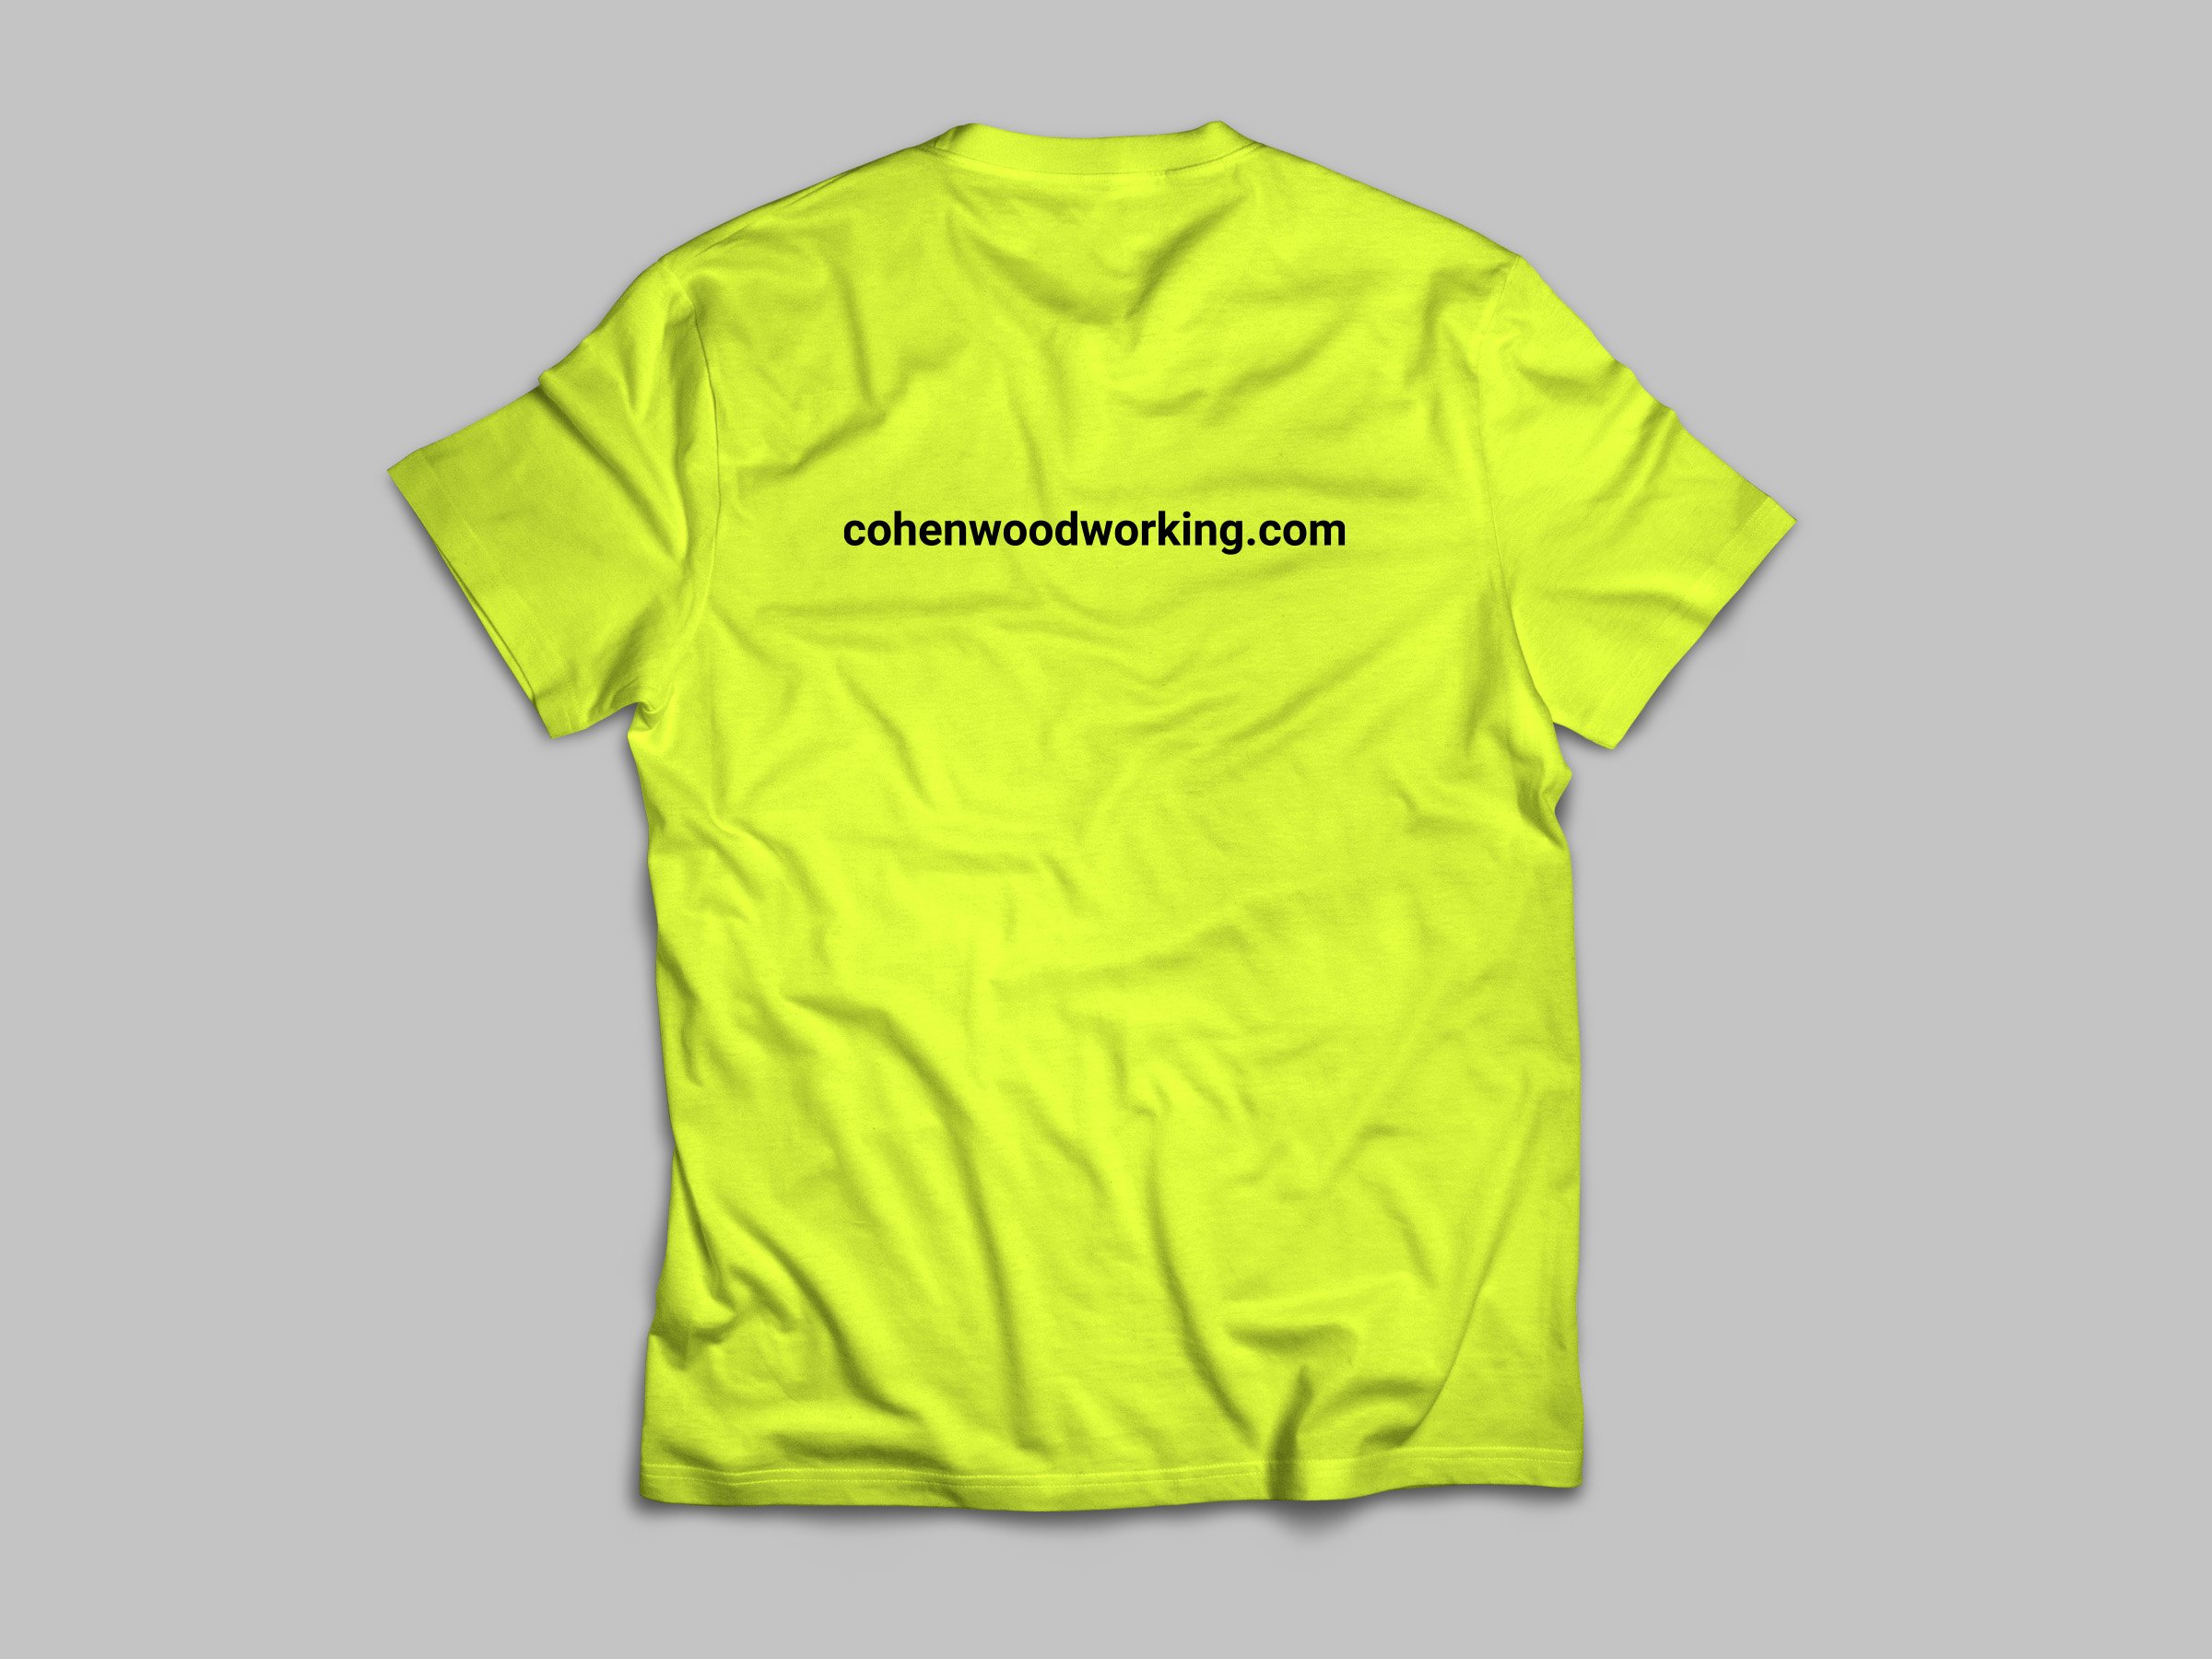 CW TShirt Mockup-yellow back.jpg